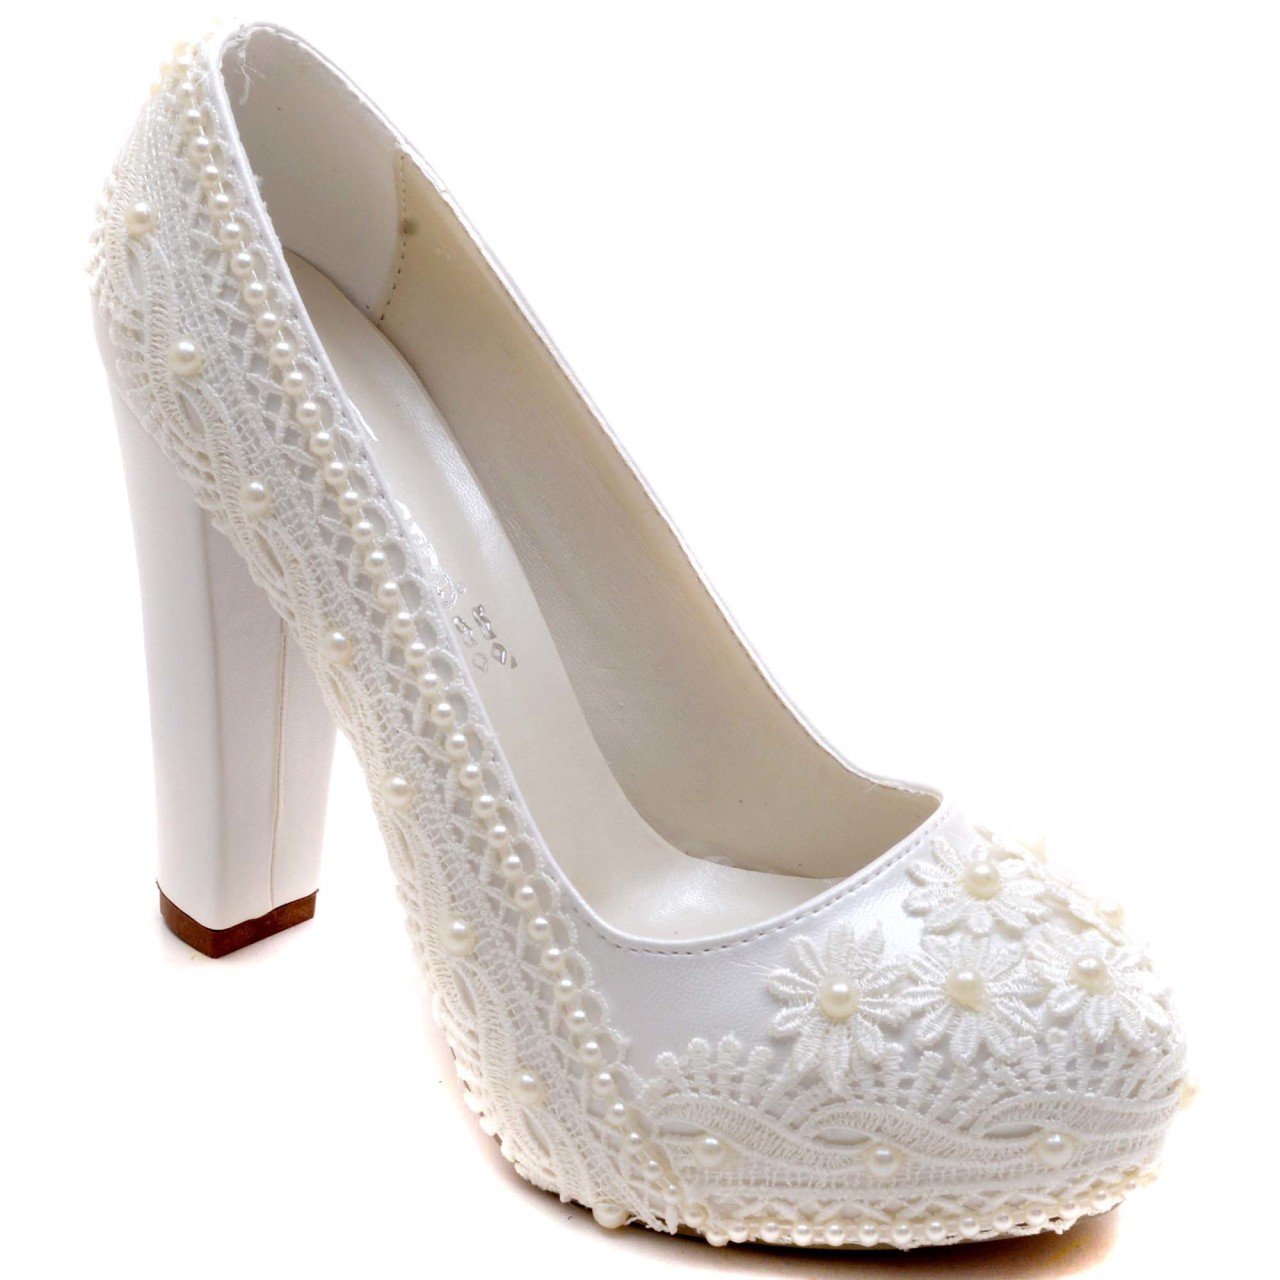 912-G Klasik Gelin Ayakkabısı - Beyaz